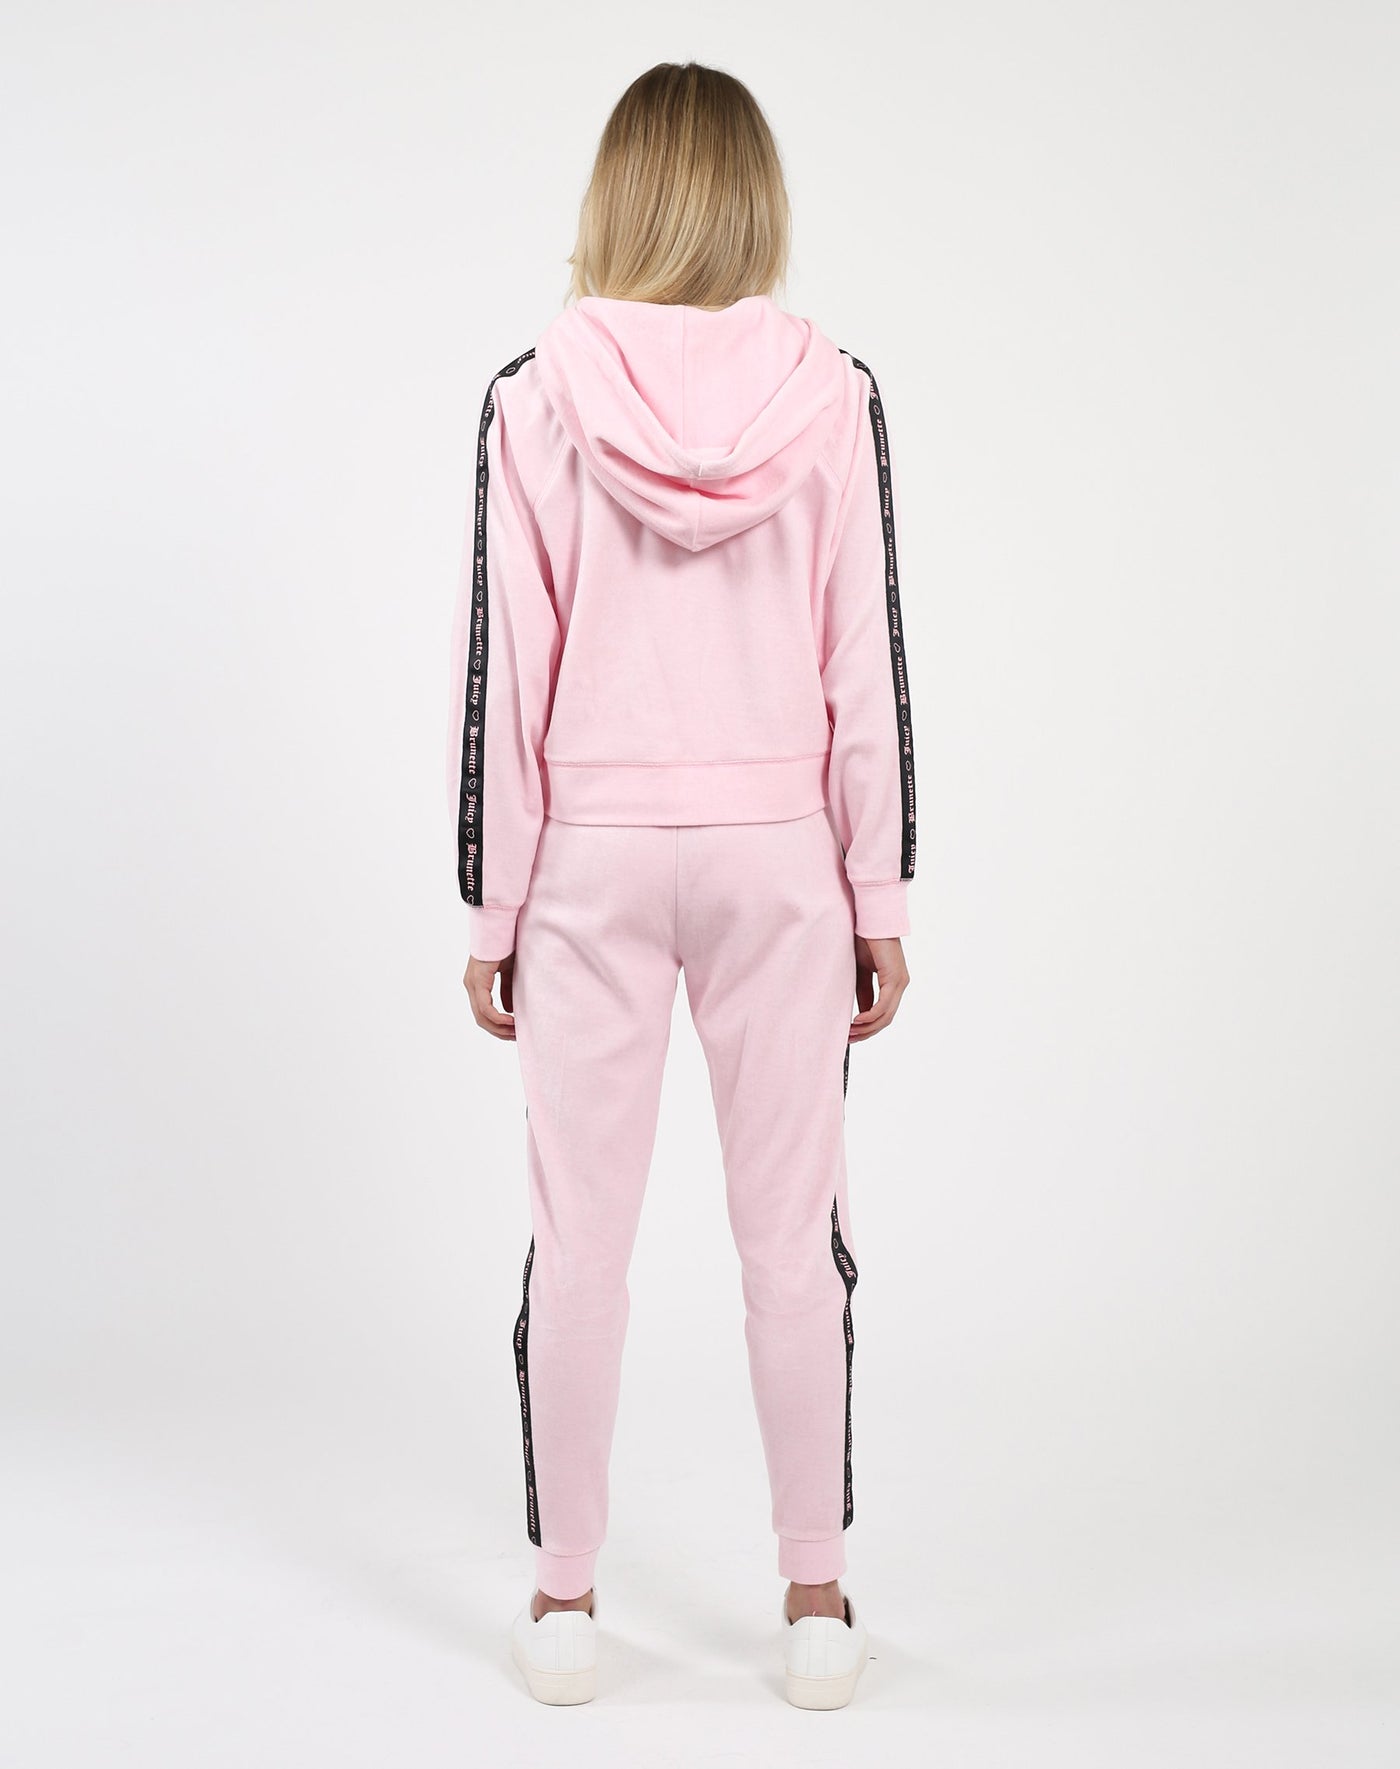 The "BRUNETTE LOVES JUICY" Pink Velour Track Jacket